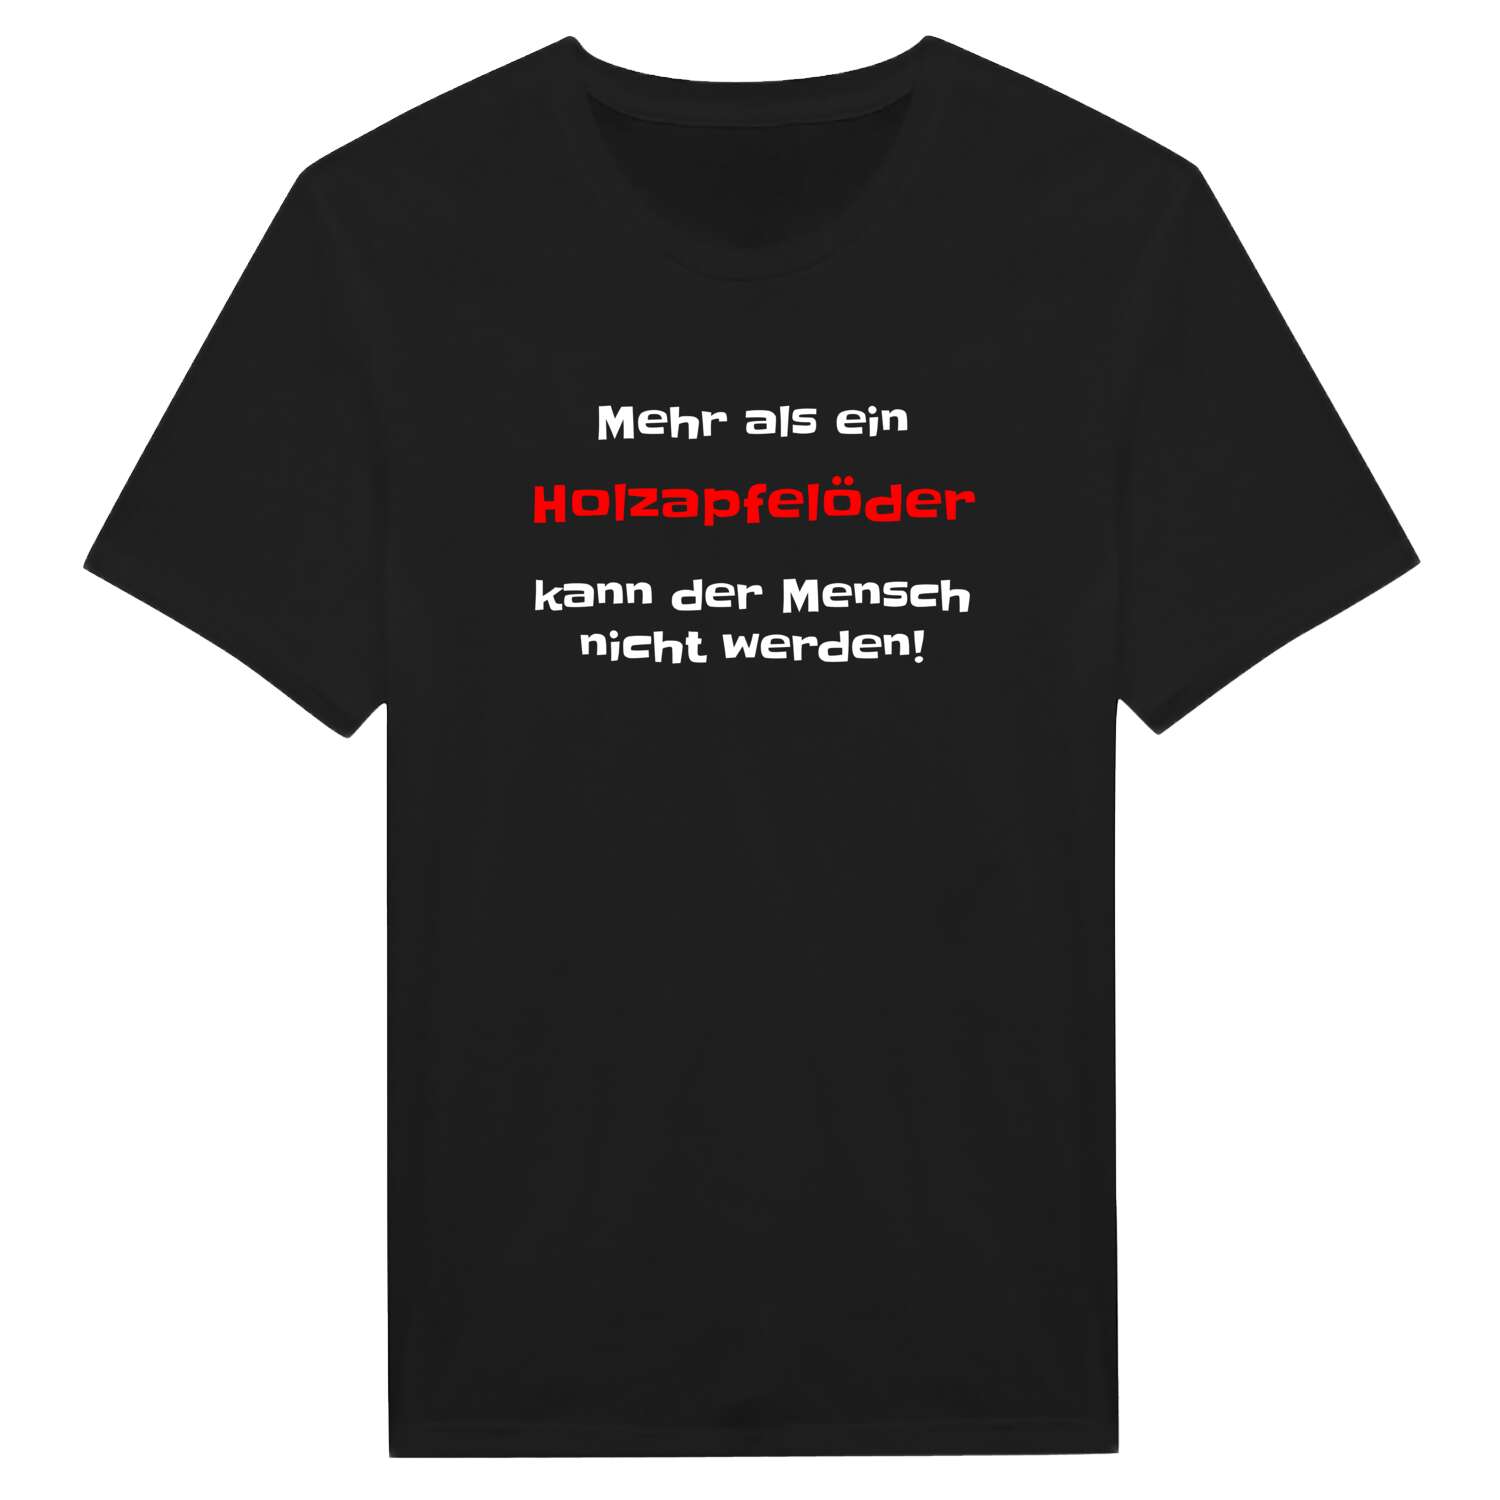 Holzapfelöd T-Shirt »Mehr als ein«